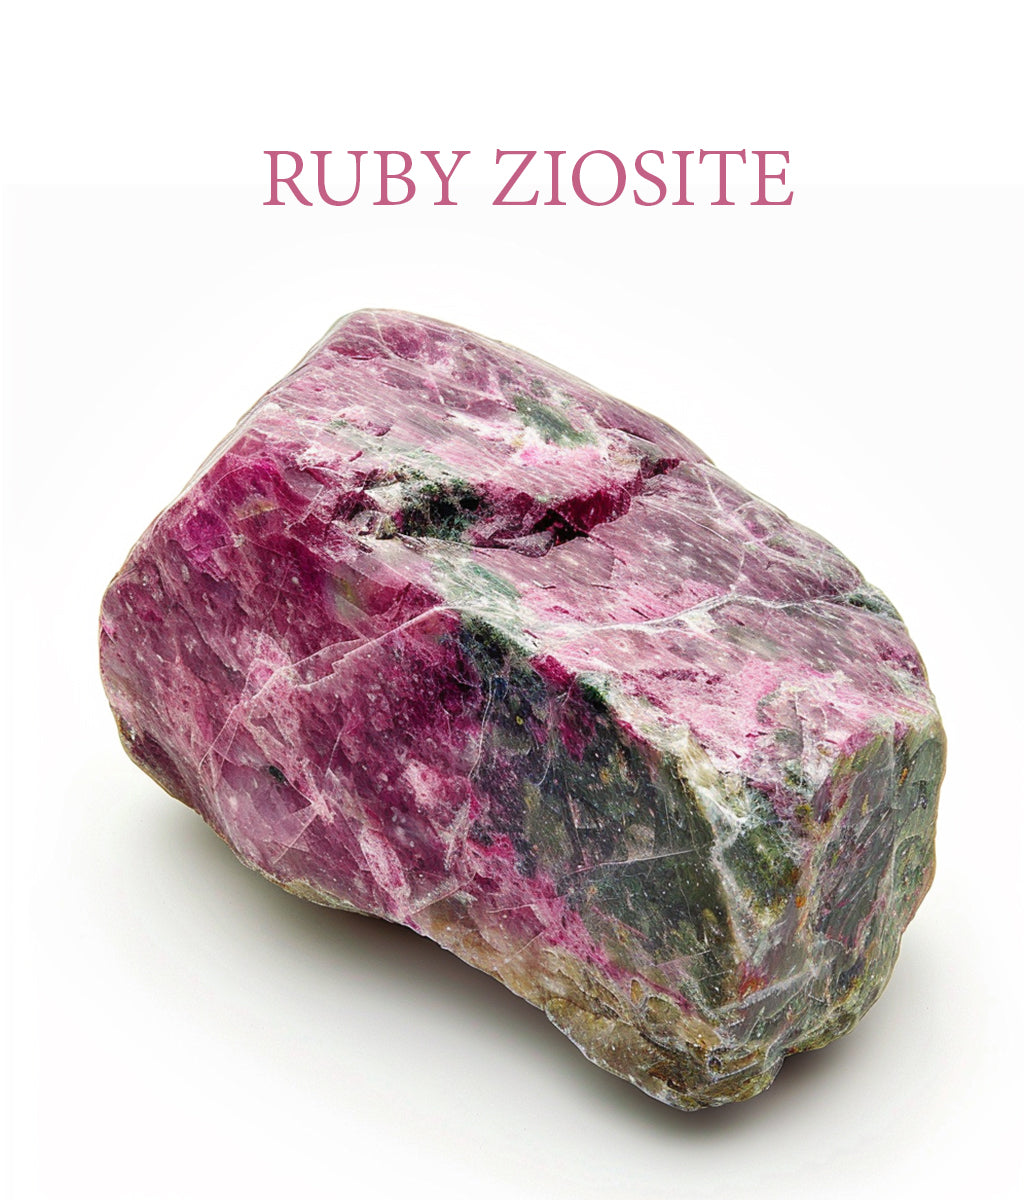 Rubyziosite